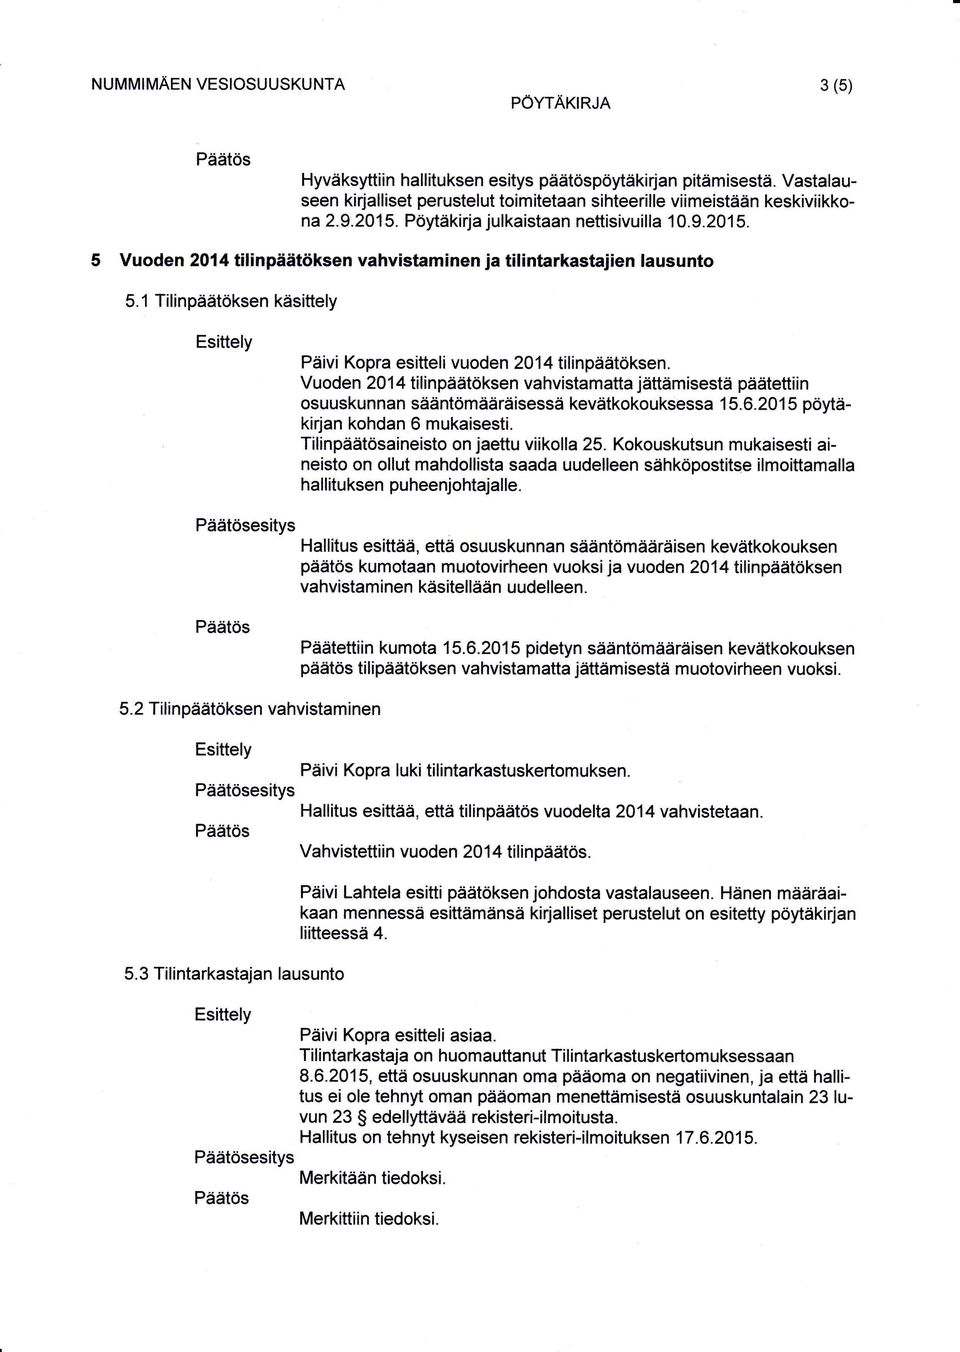 1 Tilinpäätöksen käsittely Päivi Kopra esitteli vuoden 2014 tilinpäätöksen. Vuoden 20 1 4 tilinpäätöksen vahvistamatta jättämisestä päätettiin osuuskunnan sääntömääräisessä kevätkokouksessa 1 5.6.